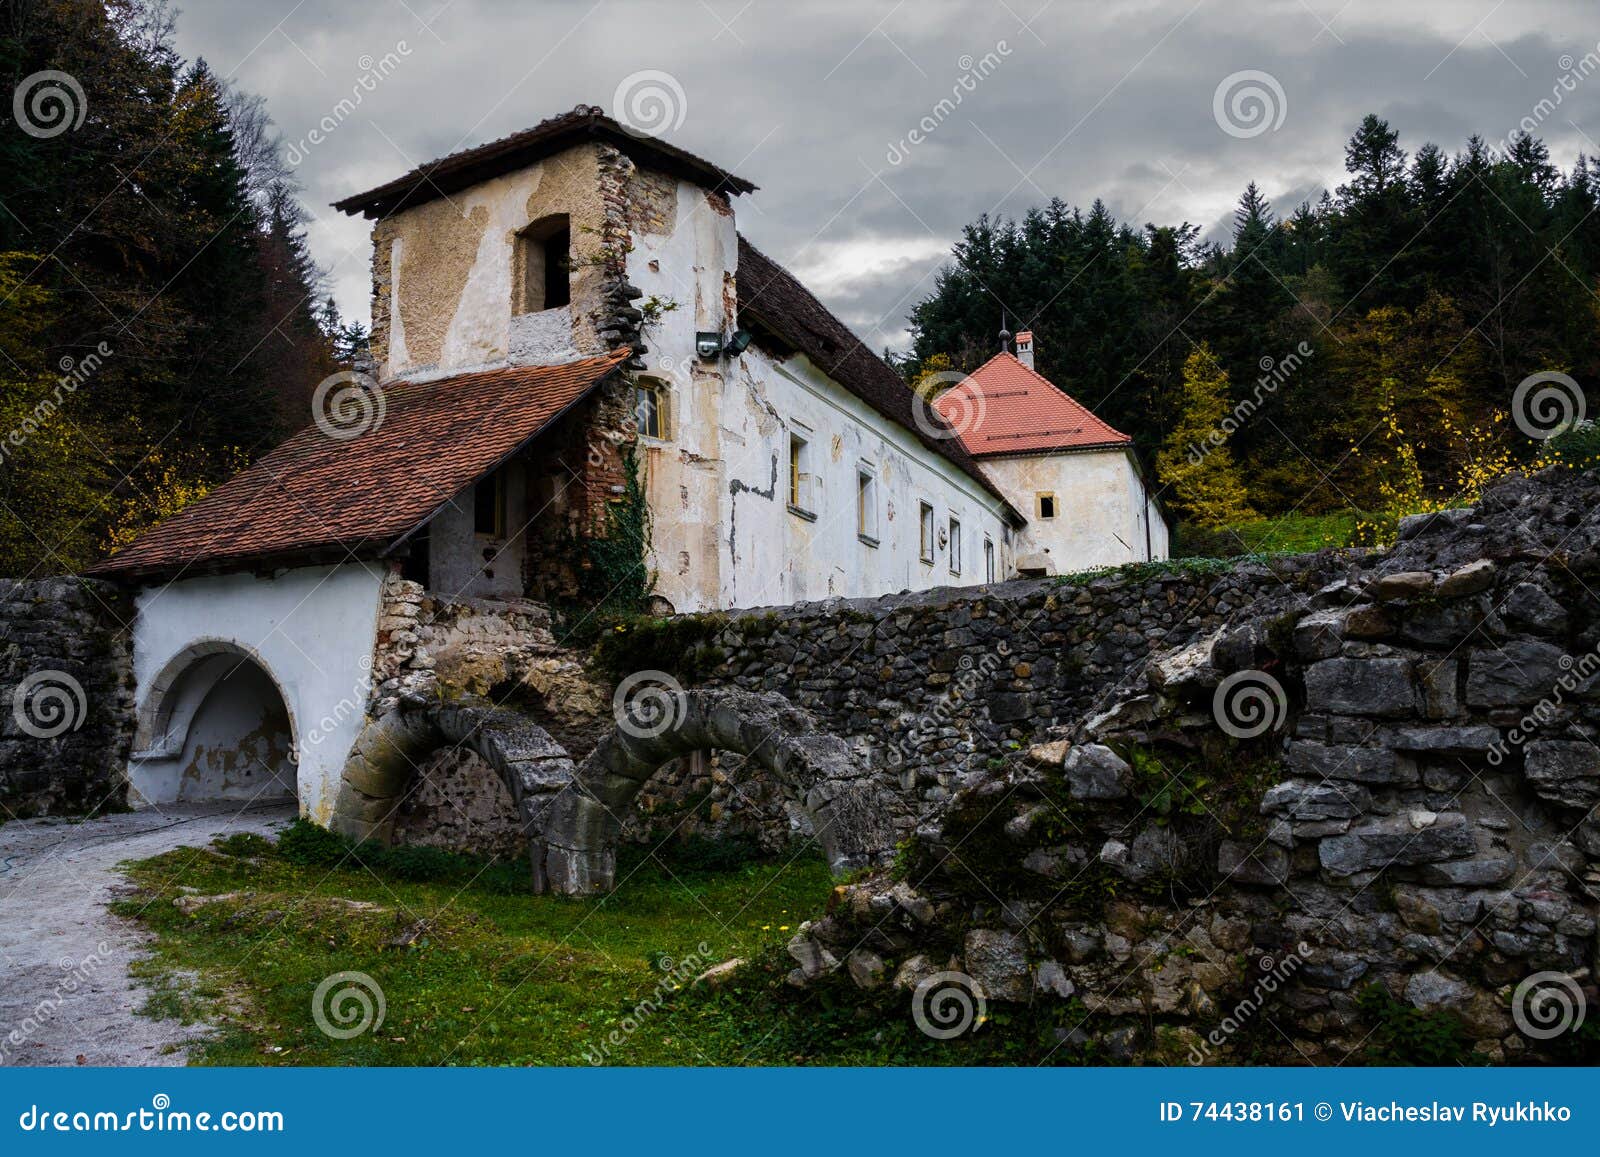 zicka kartuzija (zice charterhouse) carthusian monastery .sloven